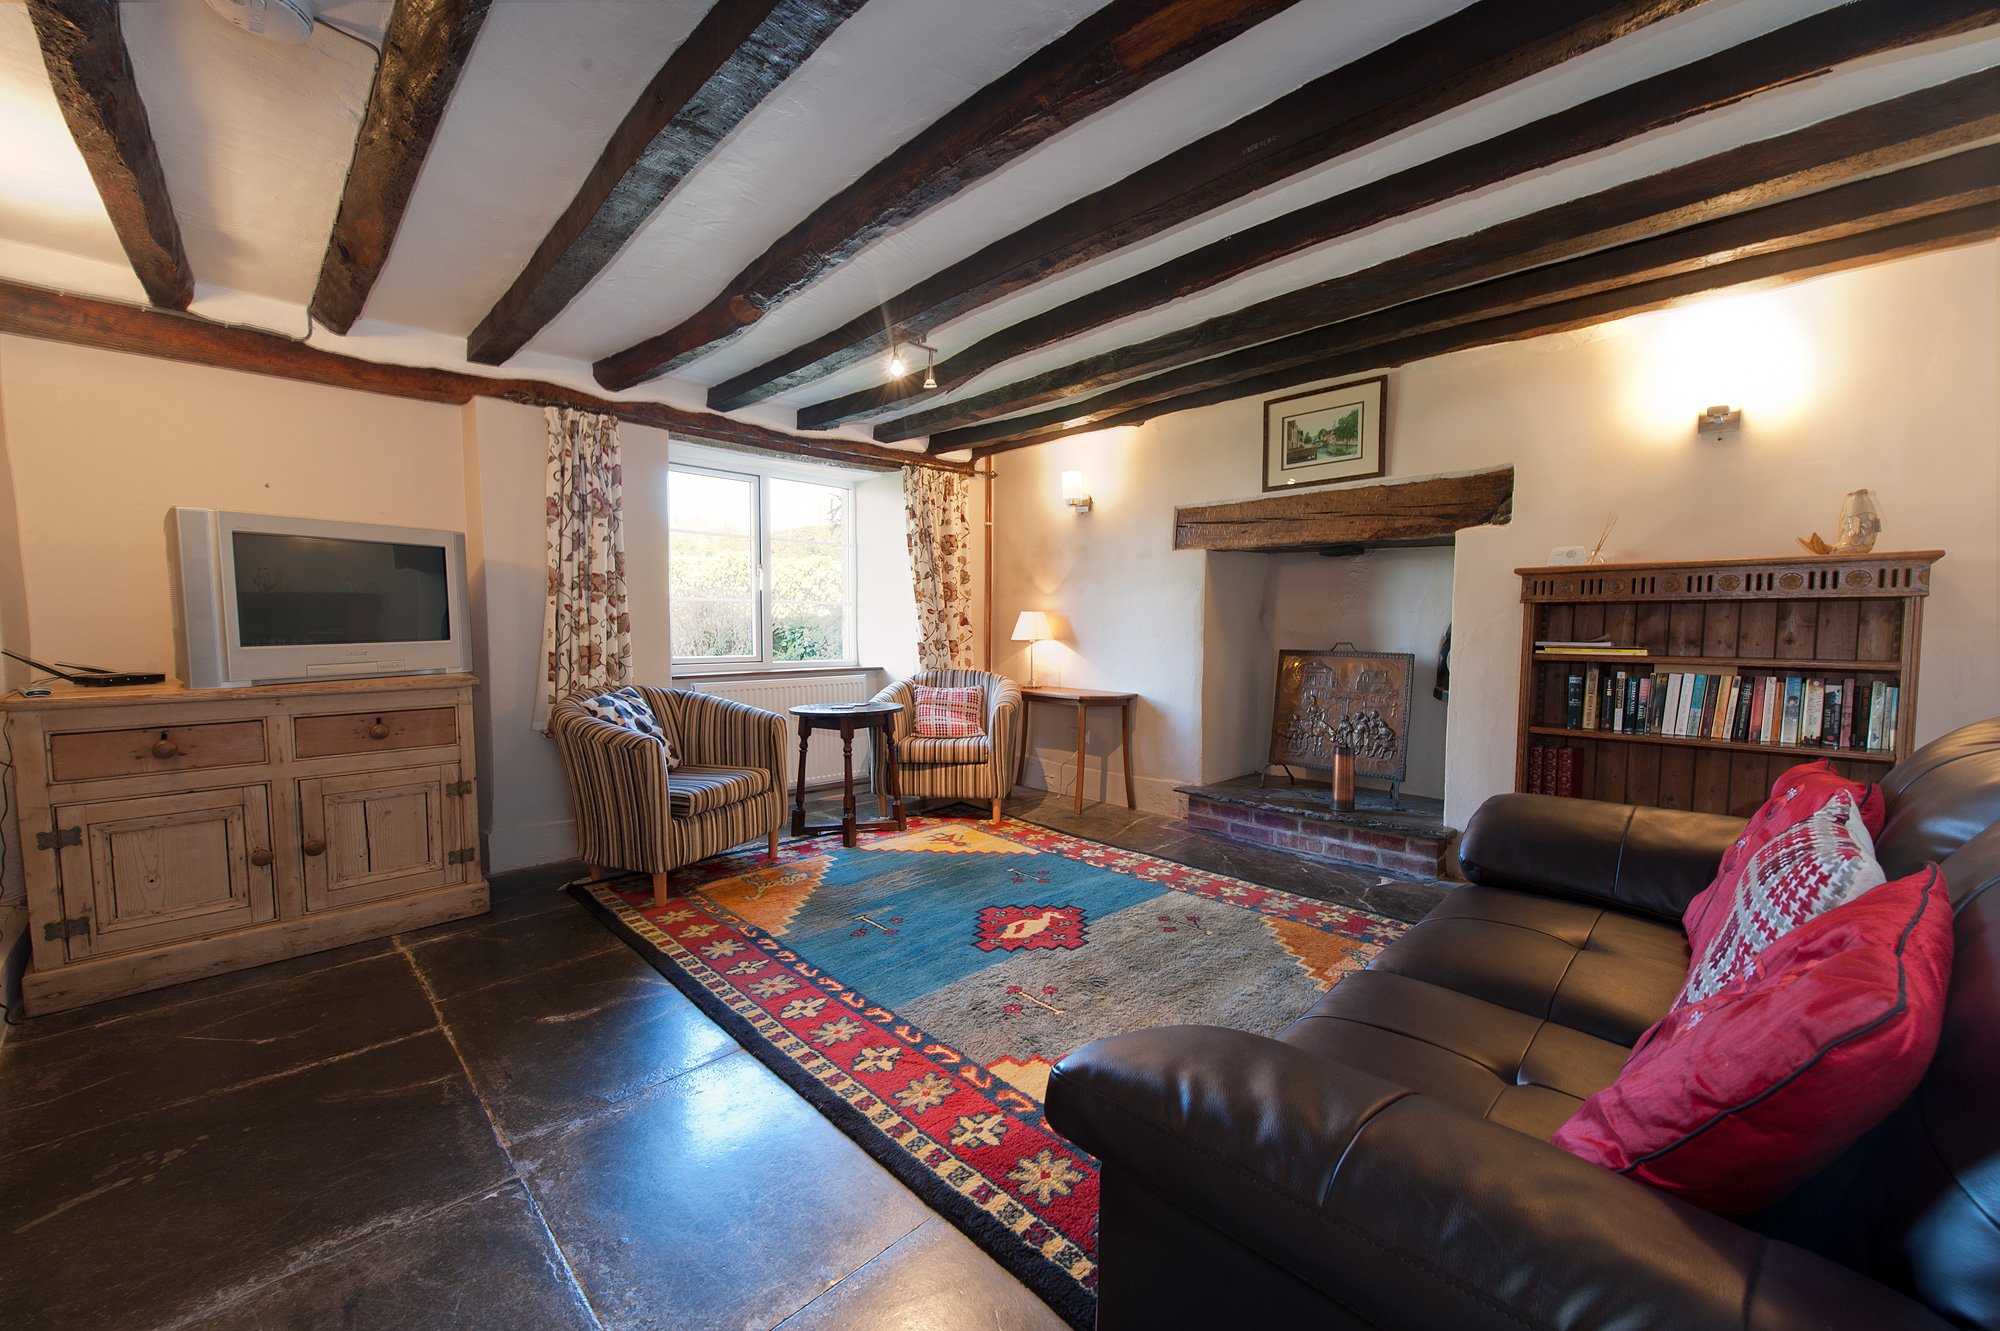 The Farmhouse - 16 Century Family Accommodation, Cornwall